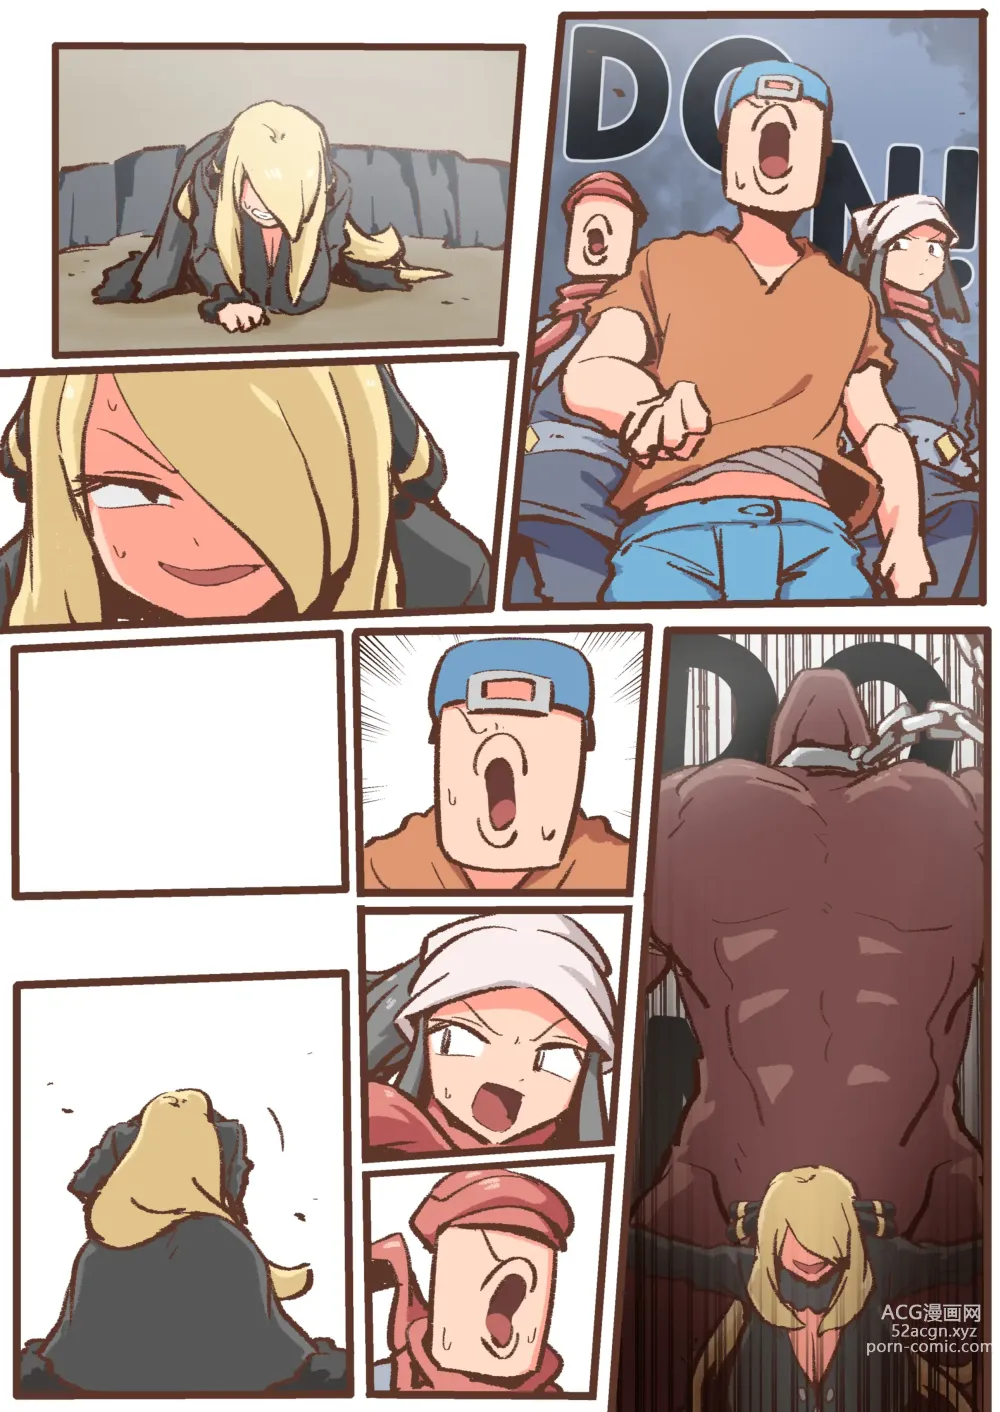 Page 56 of doujinshi Spank-Man: Rise